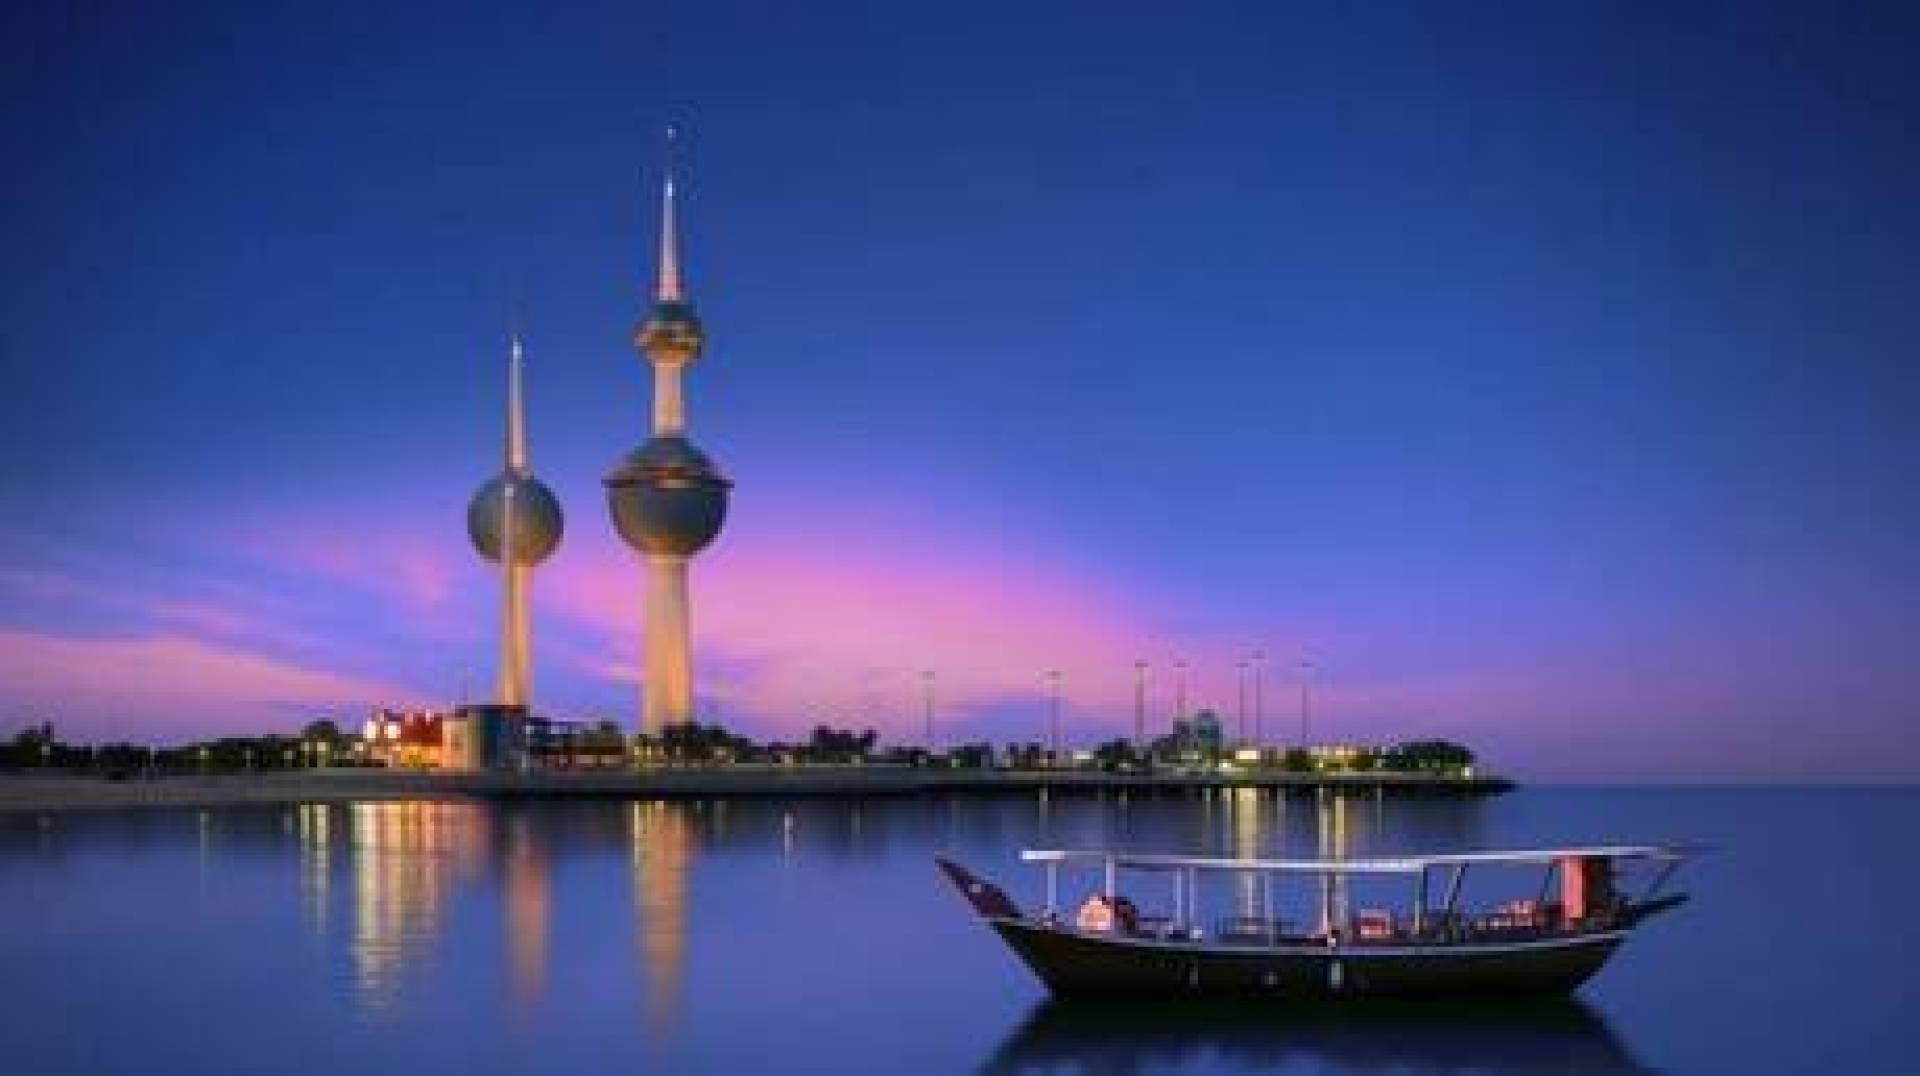 بالفيديو والصور تعرف على أبرز رمز للكويت